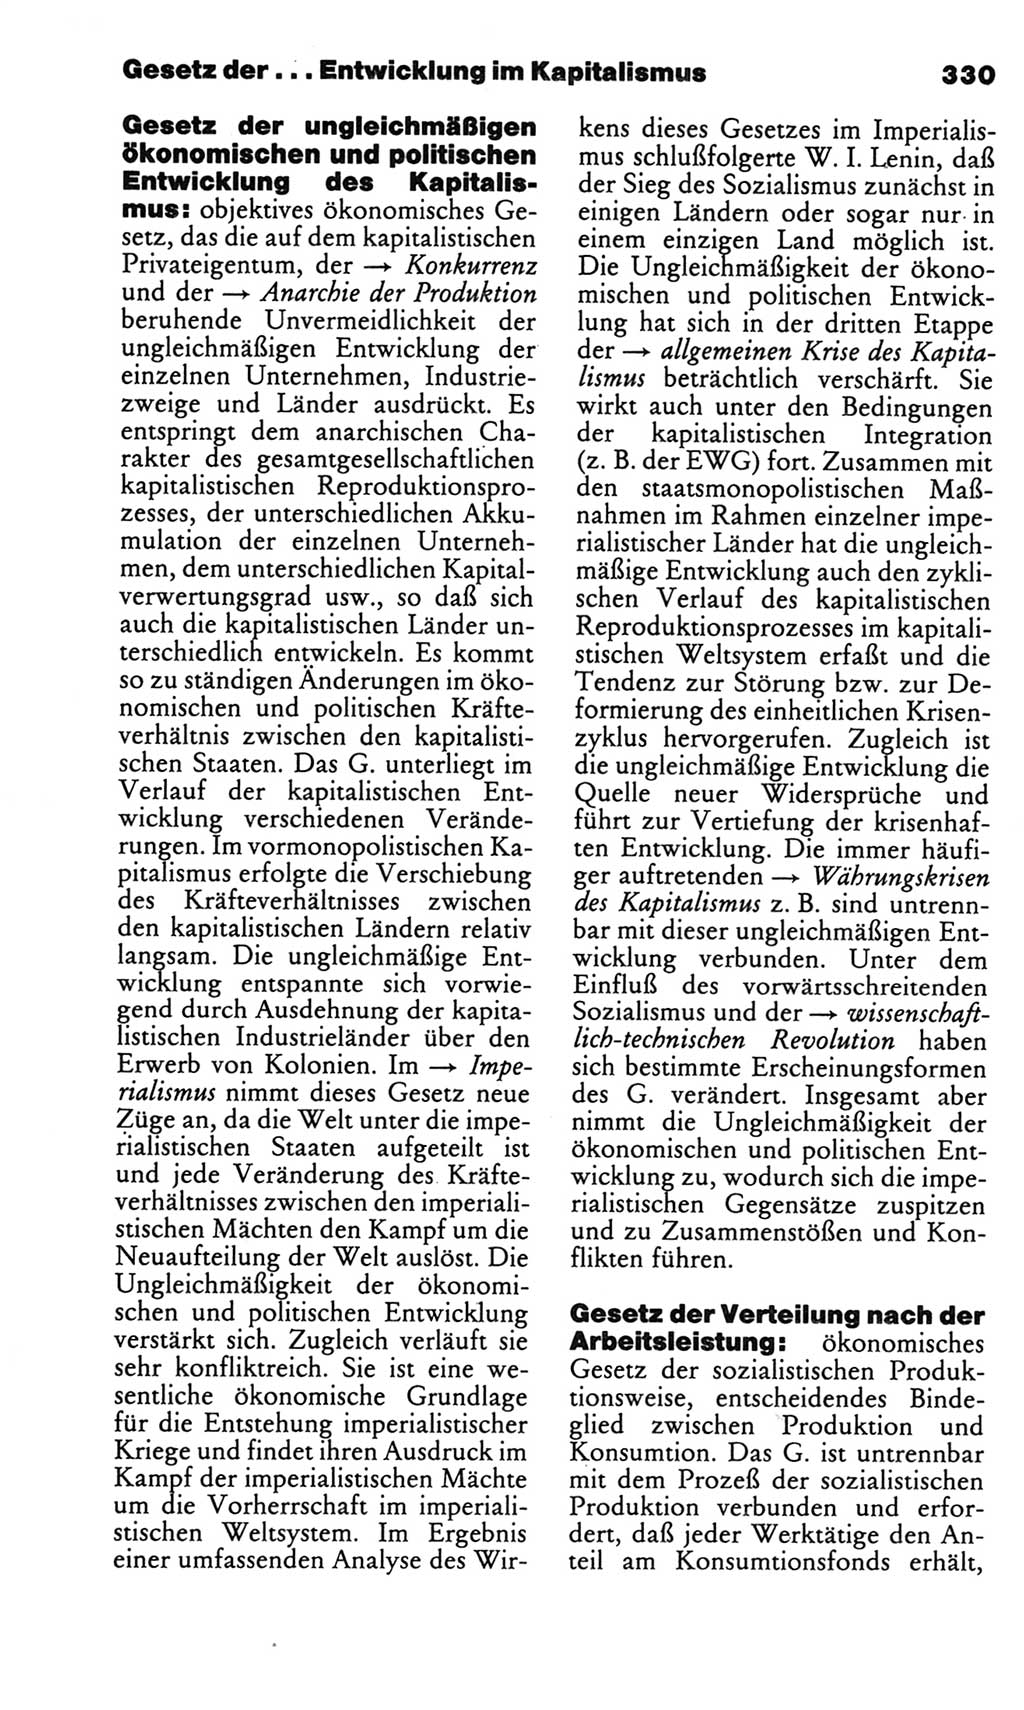 Kleines politisches Wörterbuch [Deutsche Demokratische Republik (DDR)] 1986, Seite 330 (Kl. pol. Wb. DDR 1986, S. 330)